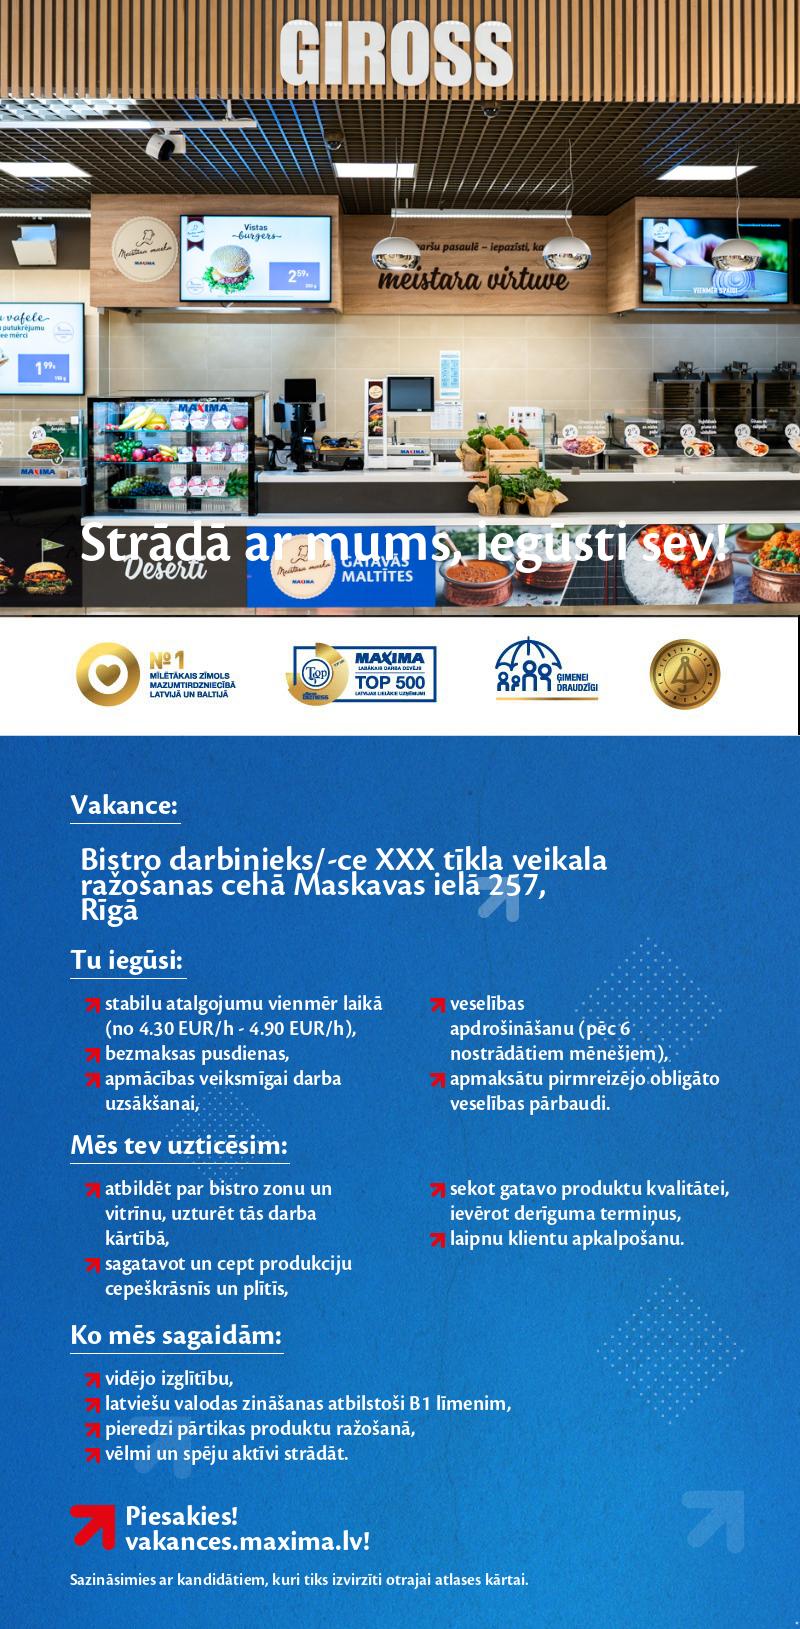 MAXIMA Latvija Bistro zonas darbinieks/-ce